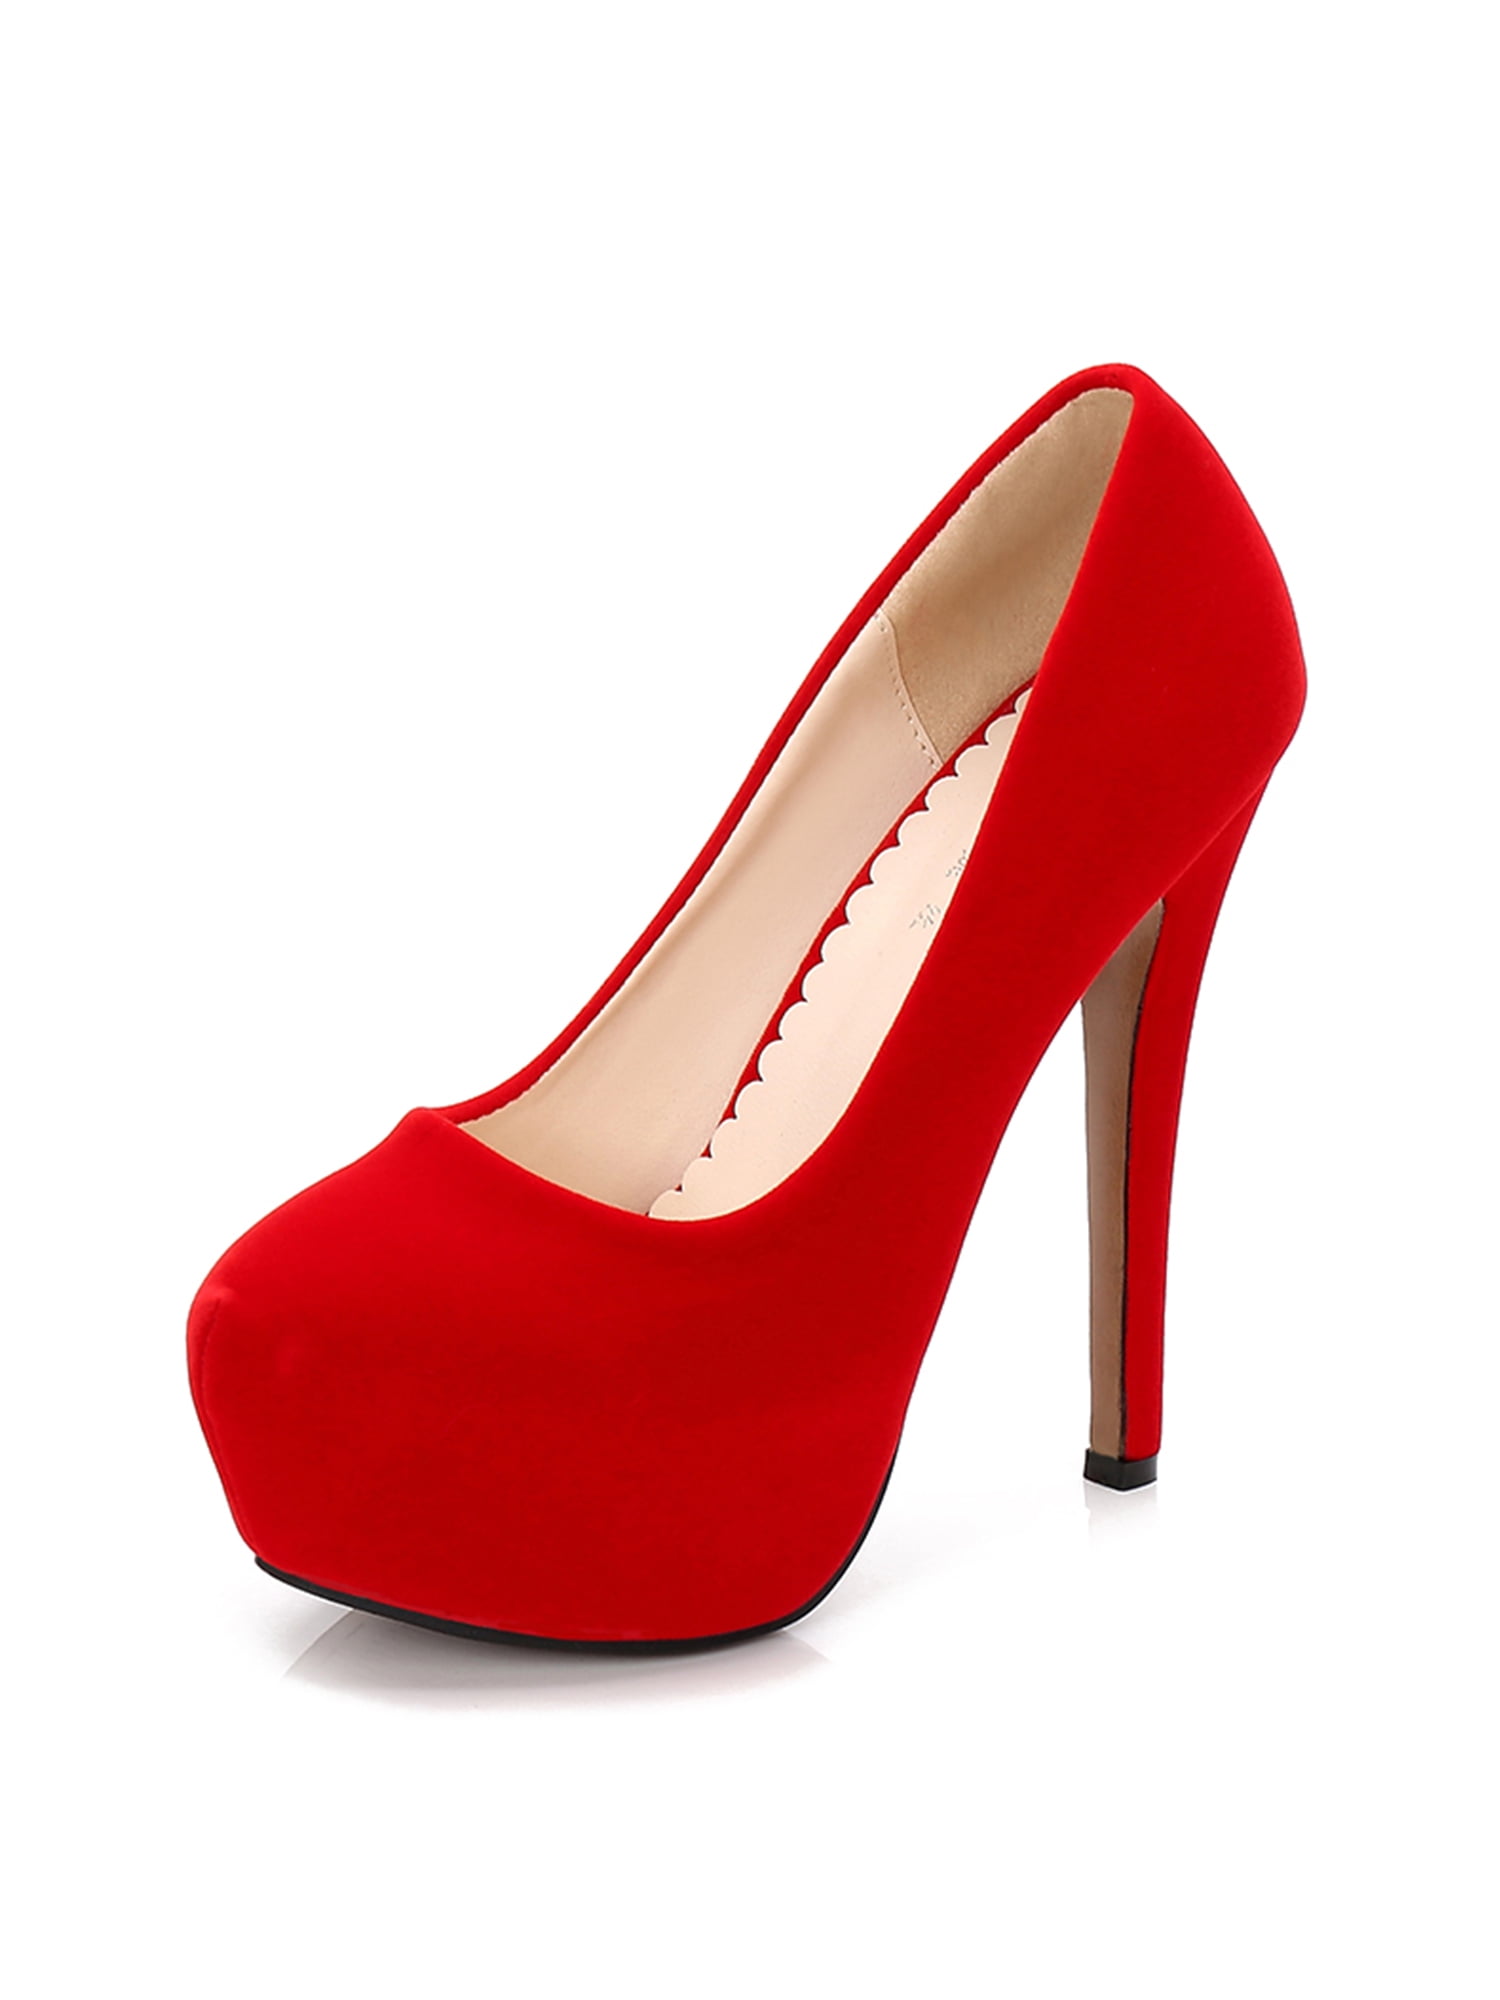 Women's Red Designer Shoes: Heels & Pumps | Nordstrom